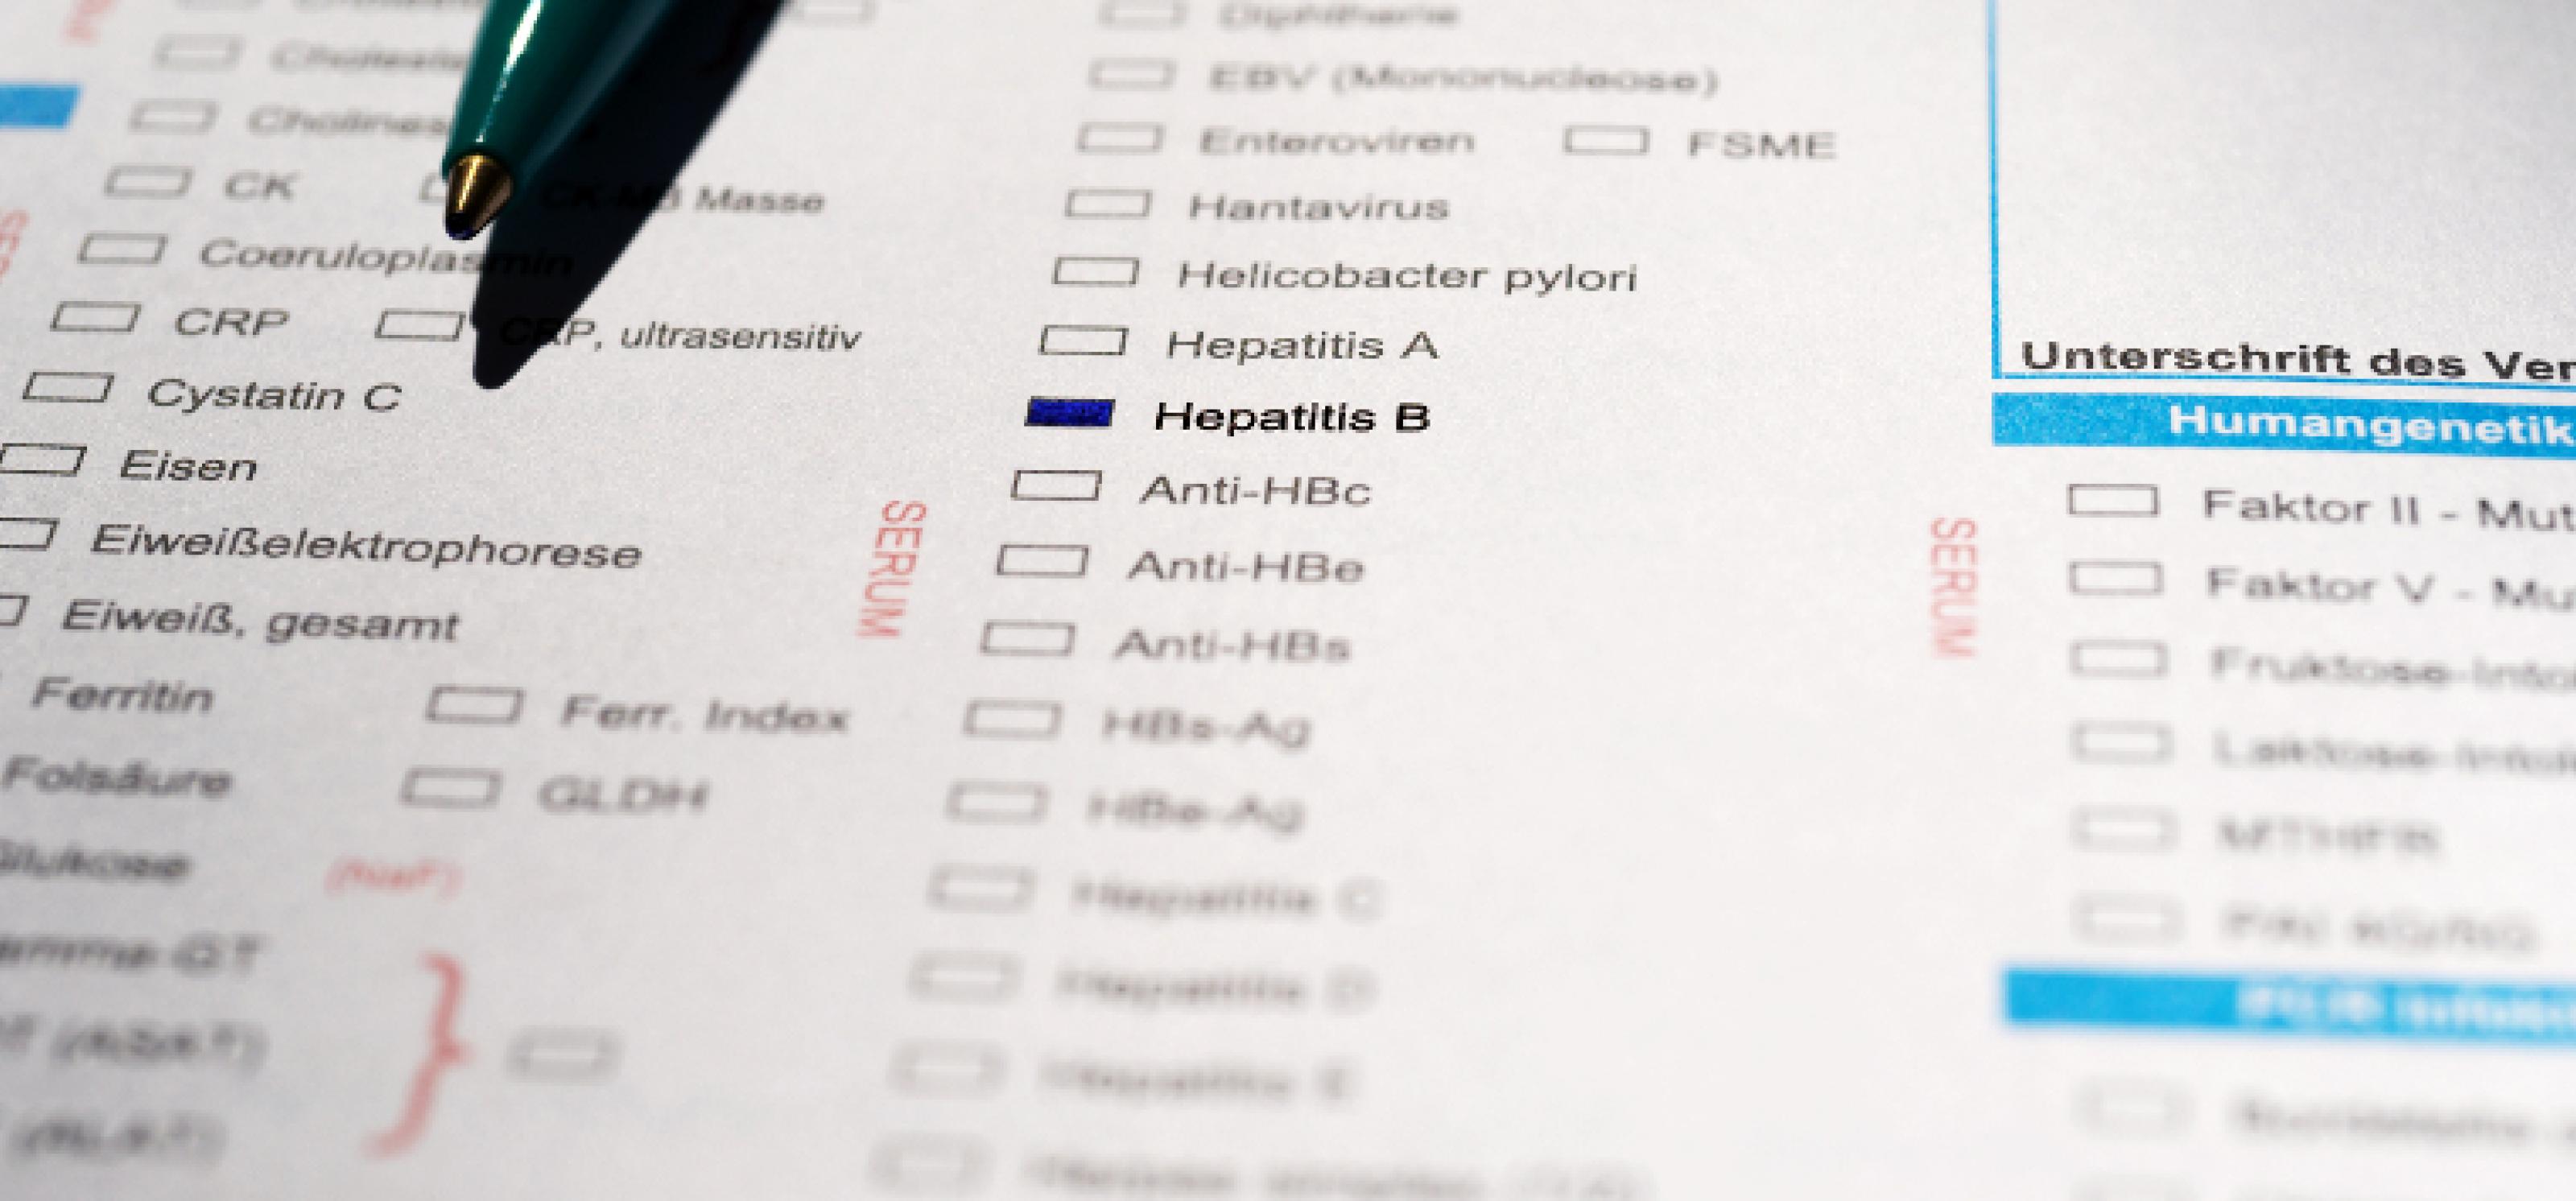 Auf einem Untersuchungsbogen ist der Schriftzug "Hepatitis B" blau markiert